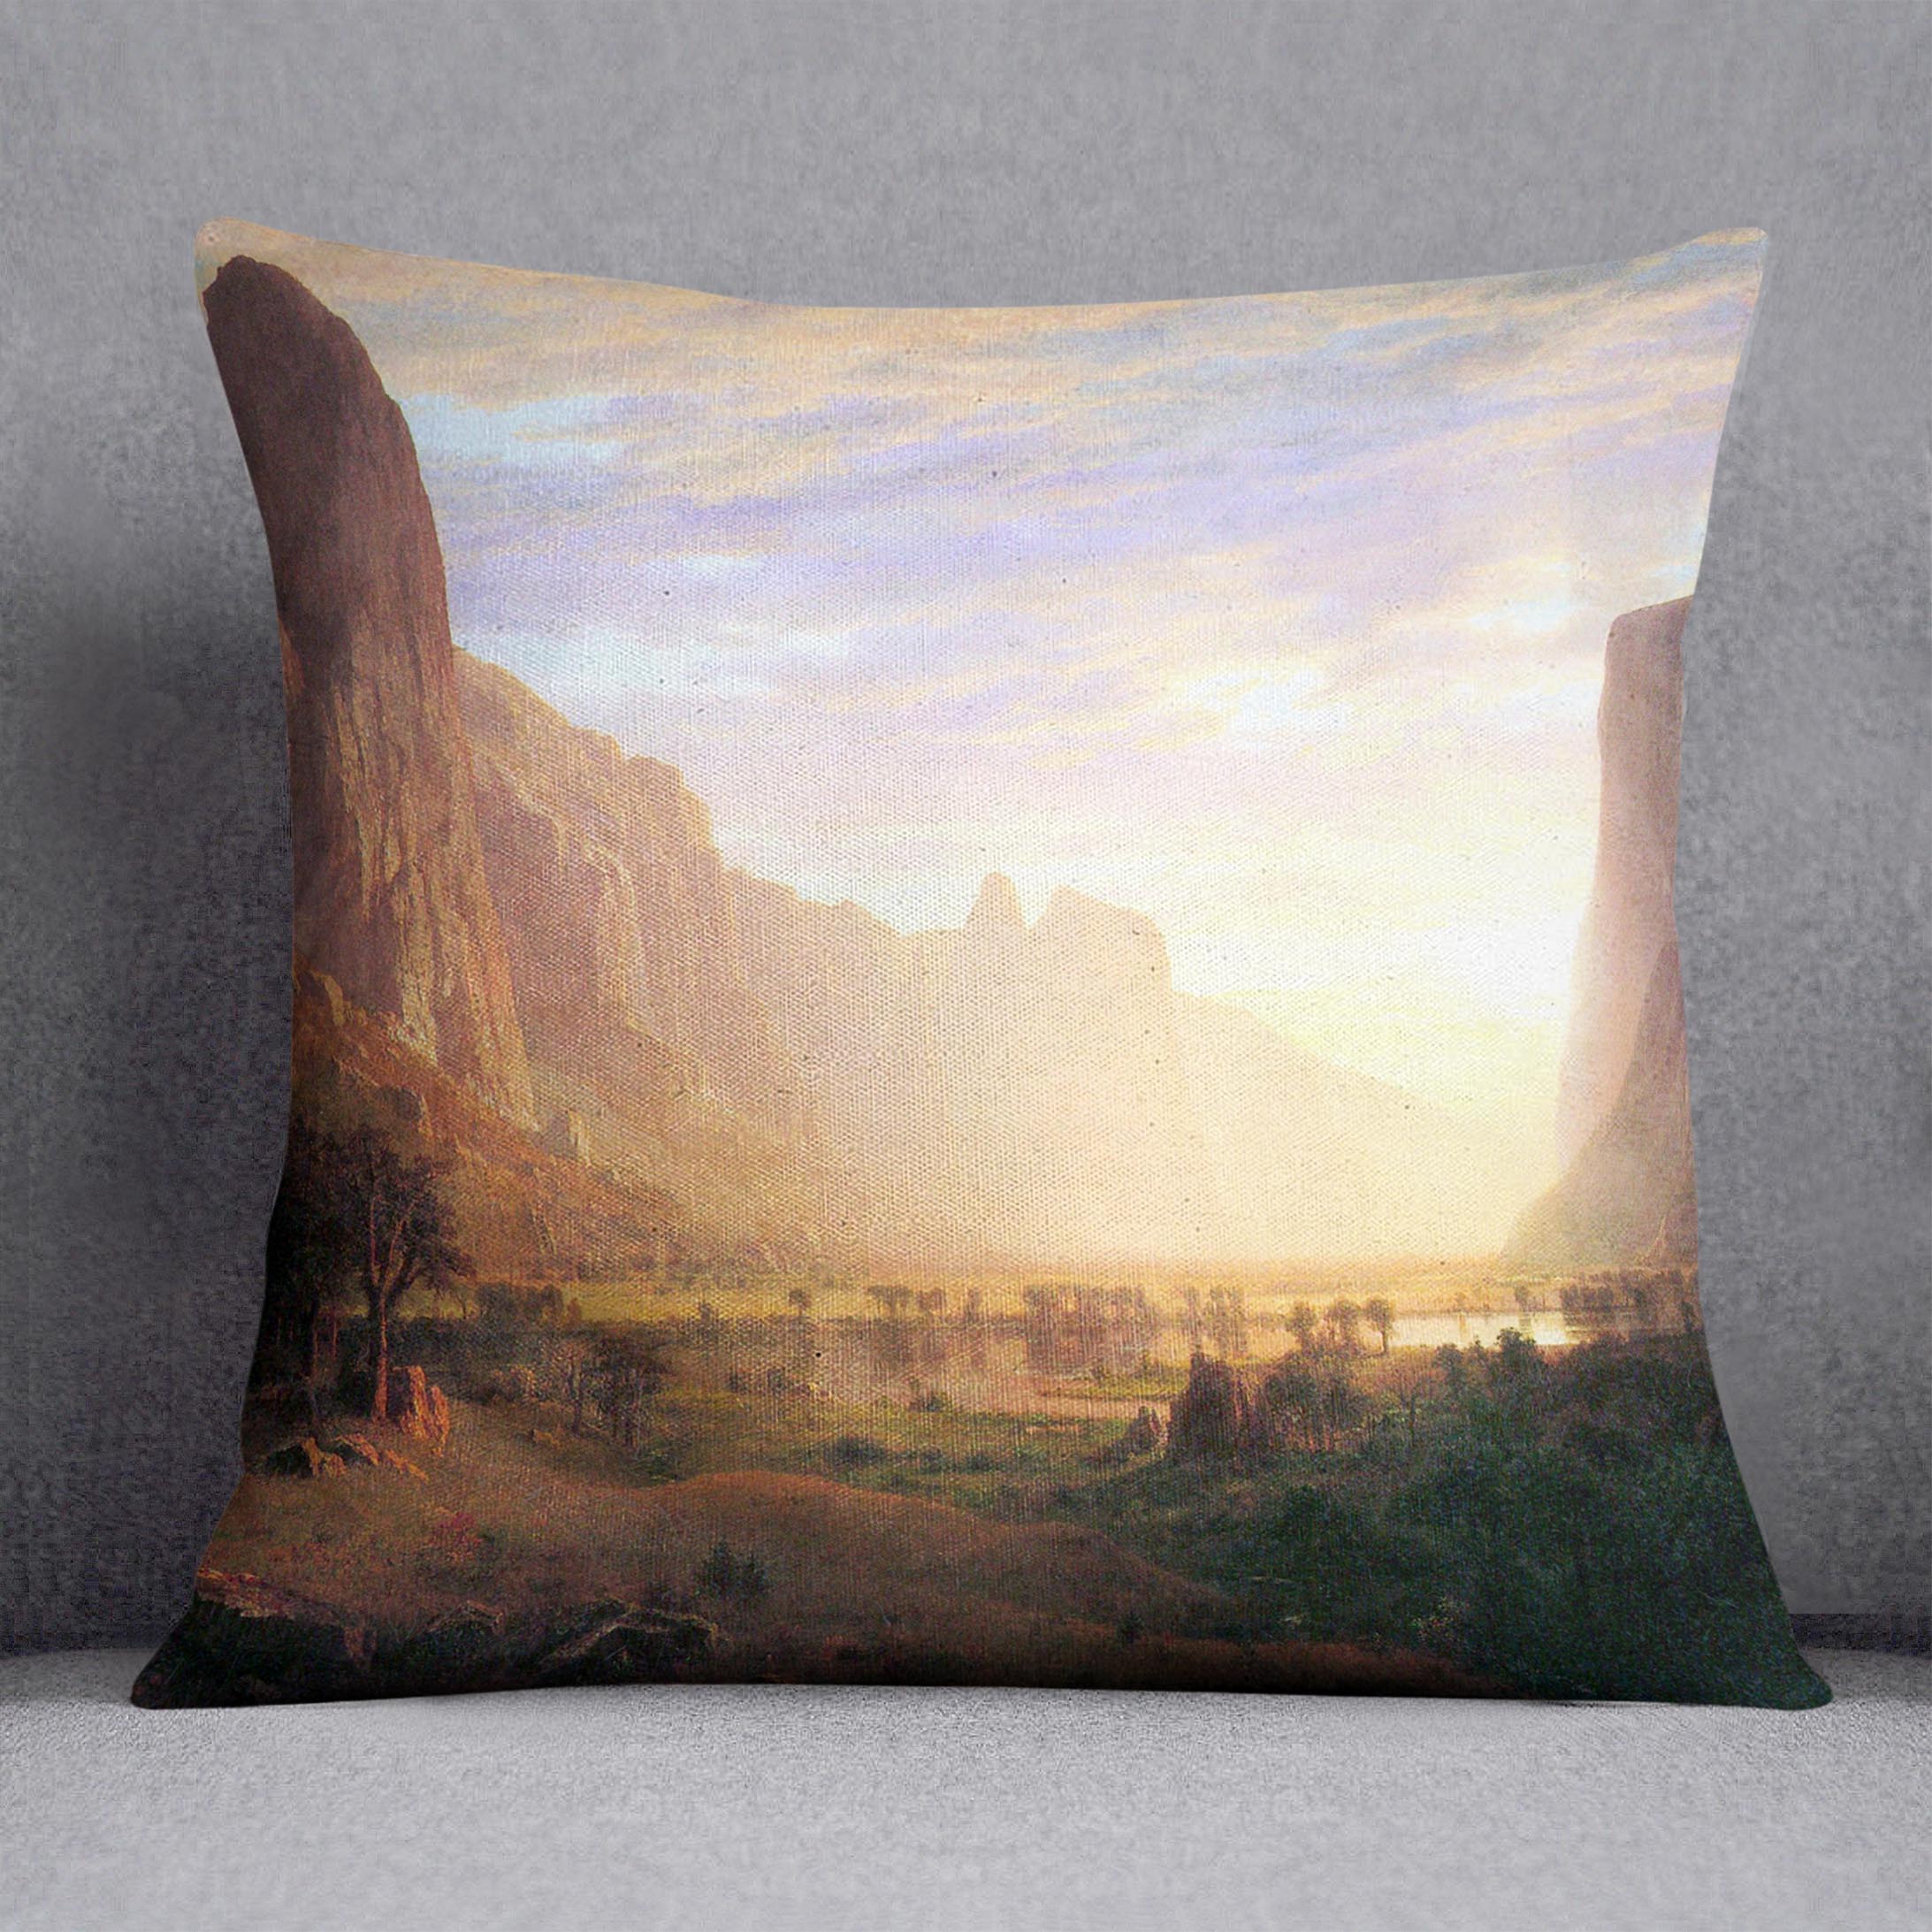 Yosemite Valley 3 by Bierstadt Cushion - Canvas Art Rocks - 1